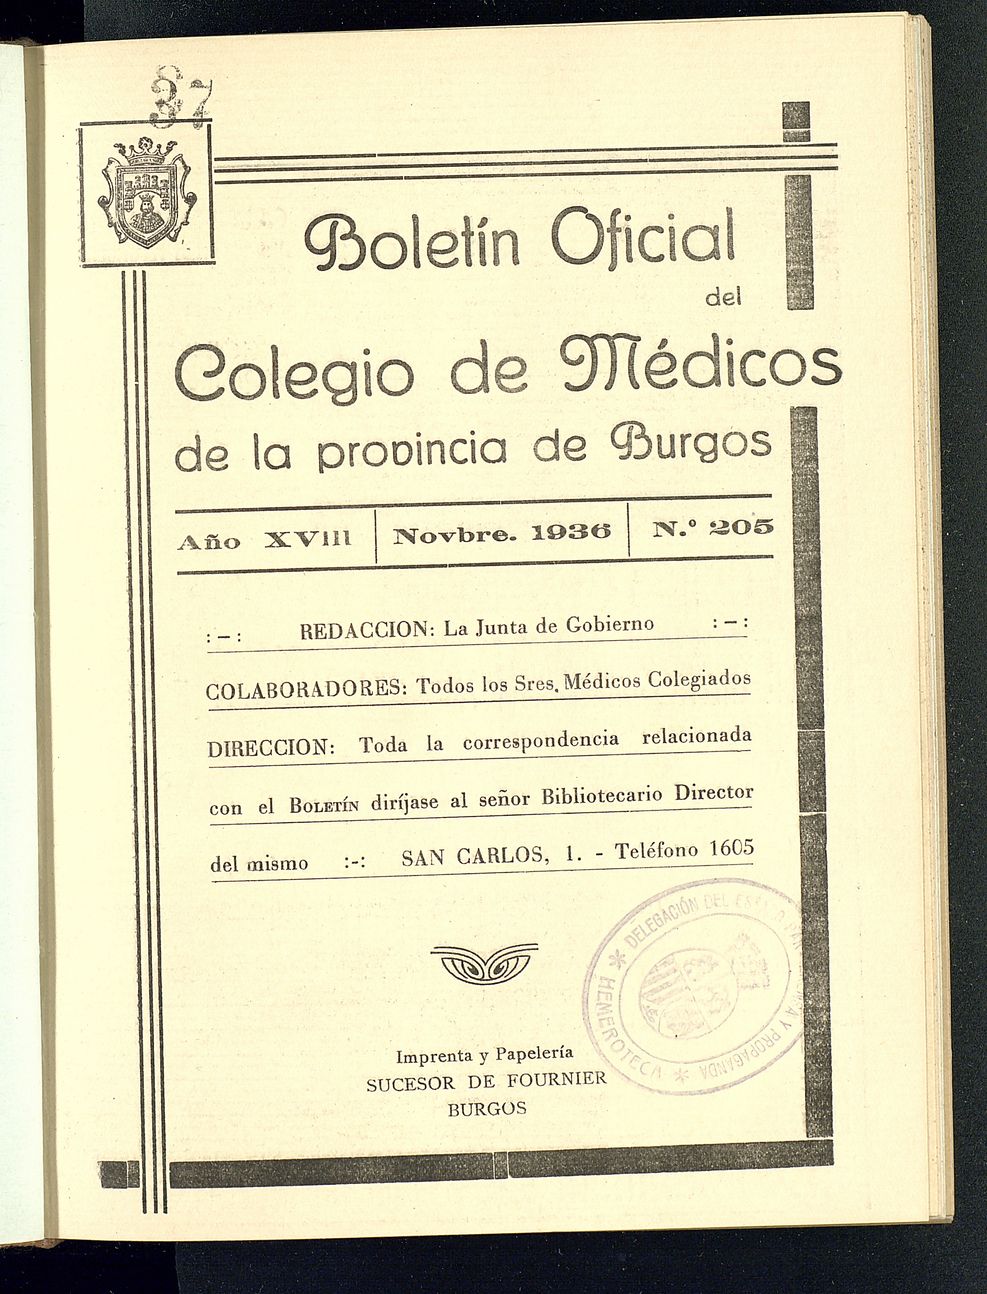 Boletín Oficial del Colegio de Médicos de la Provincia de Burgos. Noviembre de 1936, nº 205